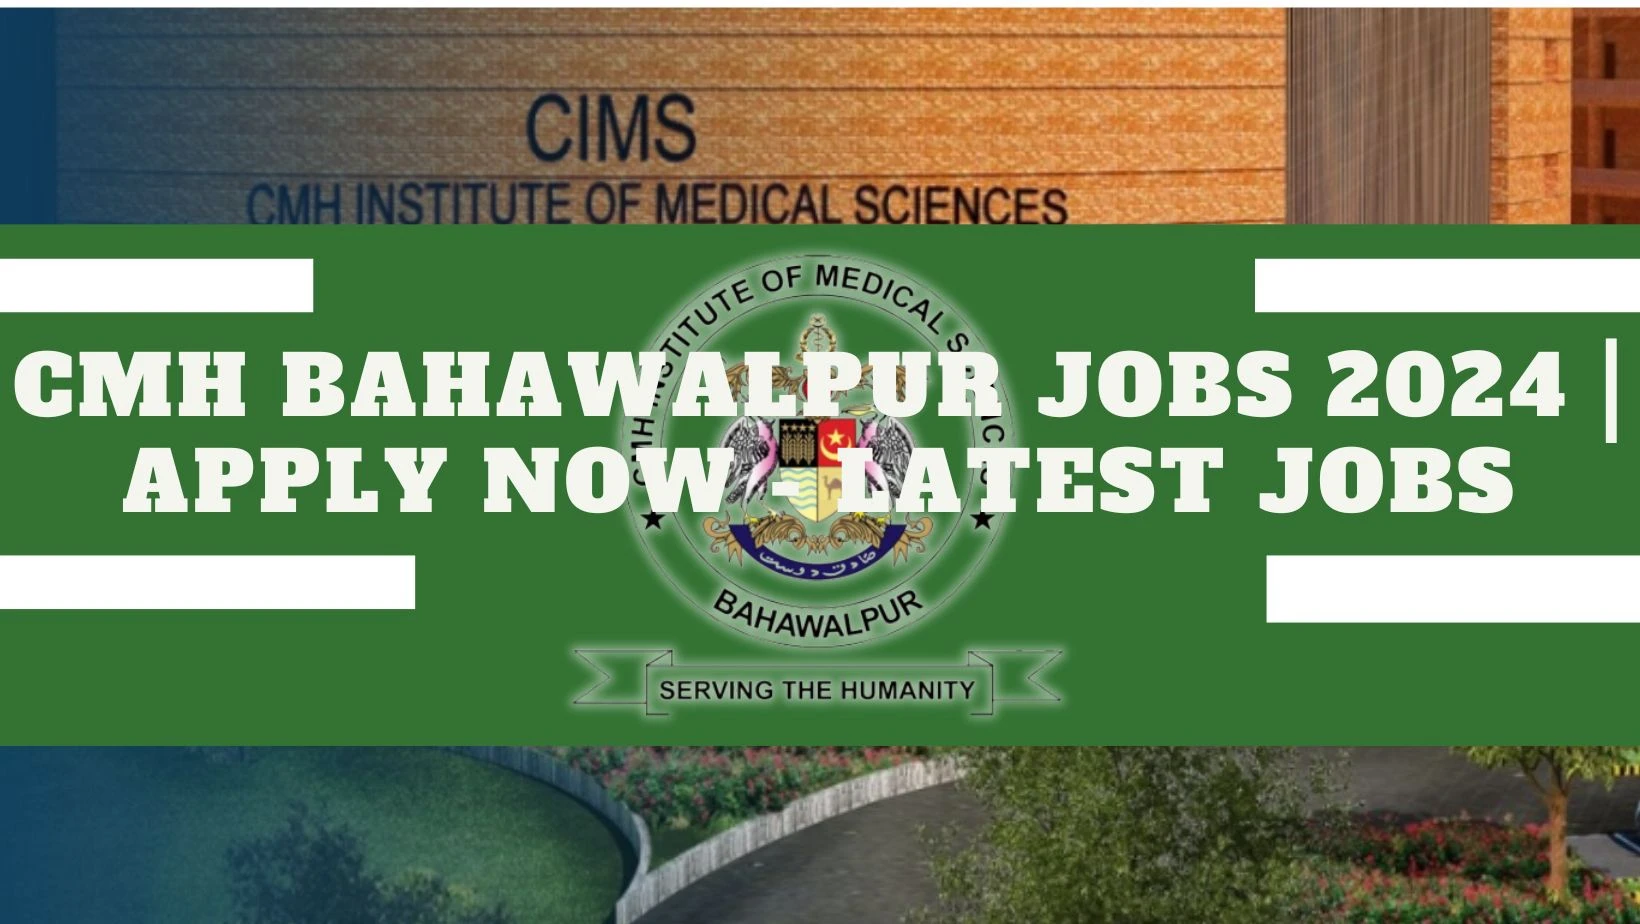 CMH Bahawalpur Jobs